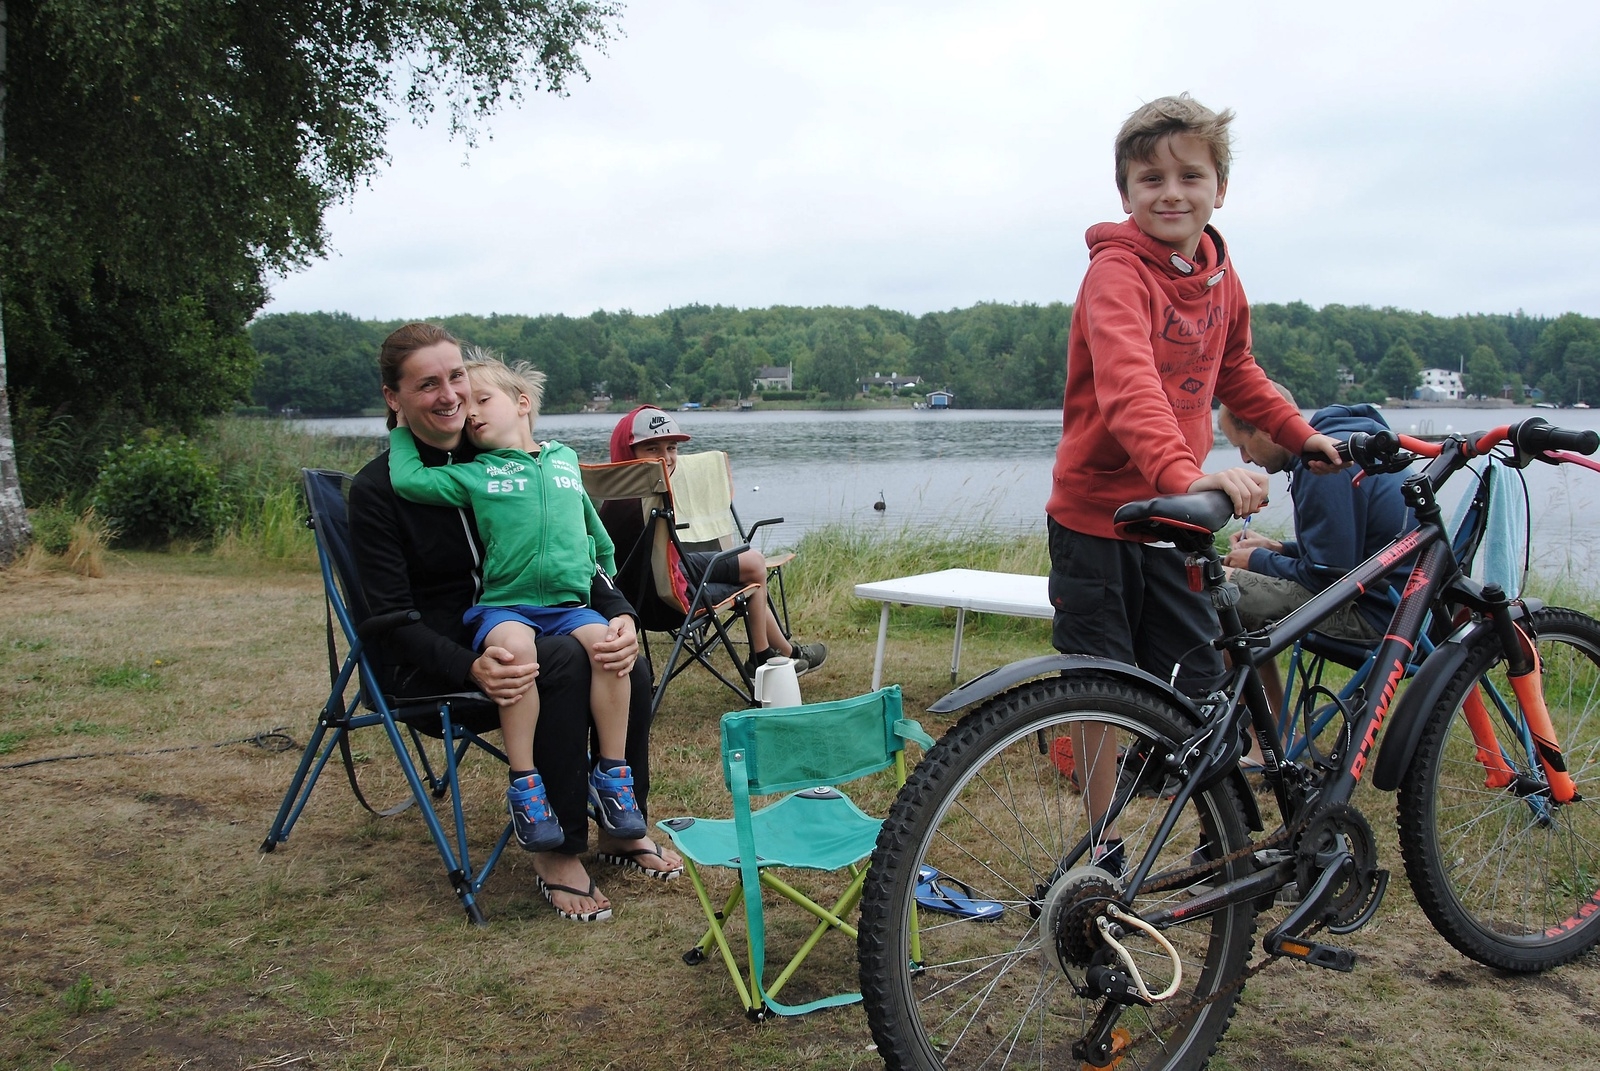 Familjen Gerritsen/Ensink från Holland på Immelns camping.